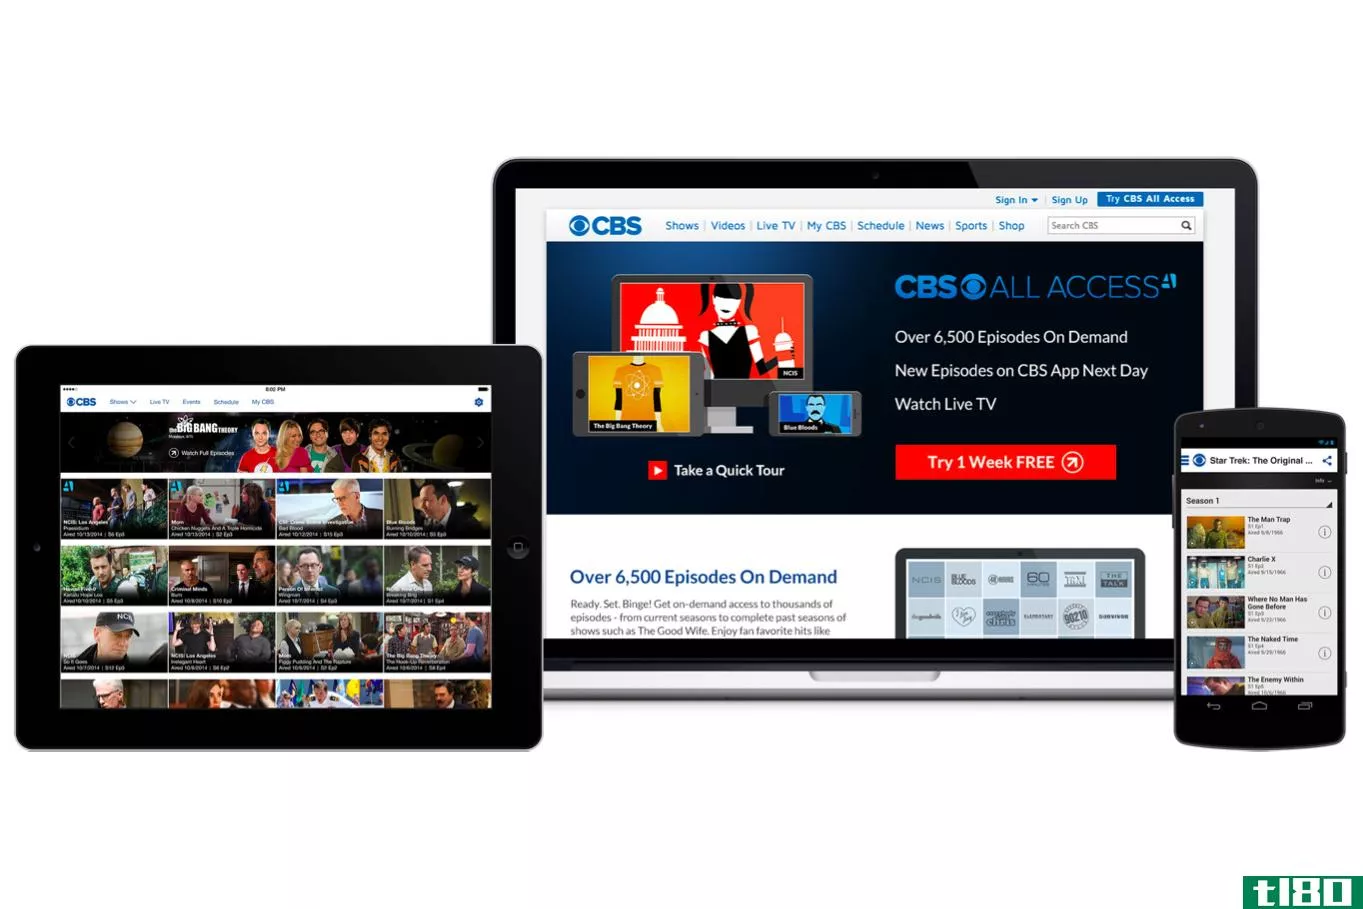 cbs所有接入和showtime流媒体服务的用户数量都在100万左右